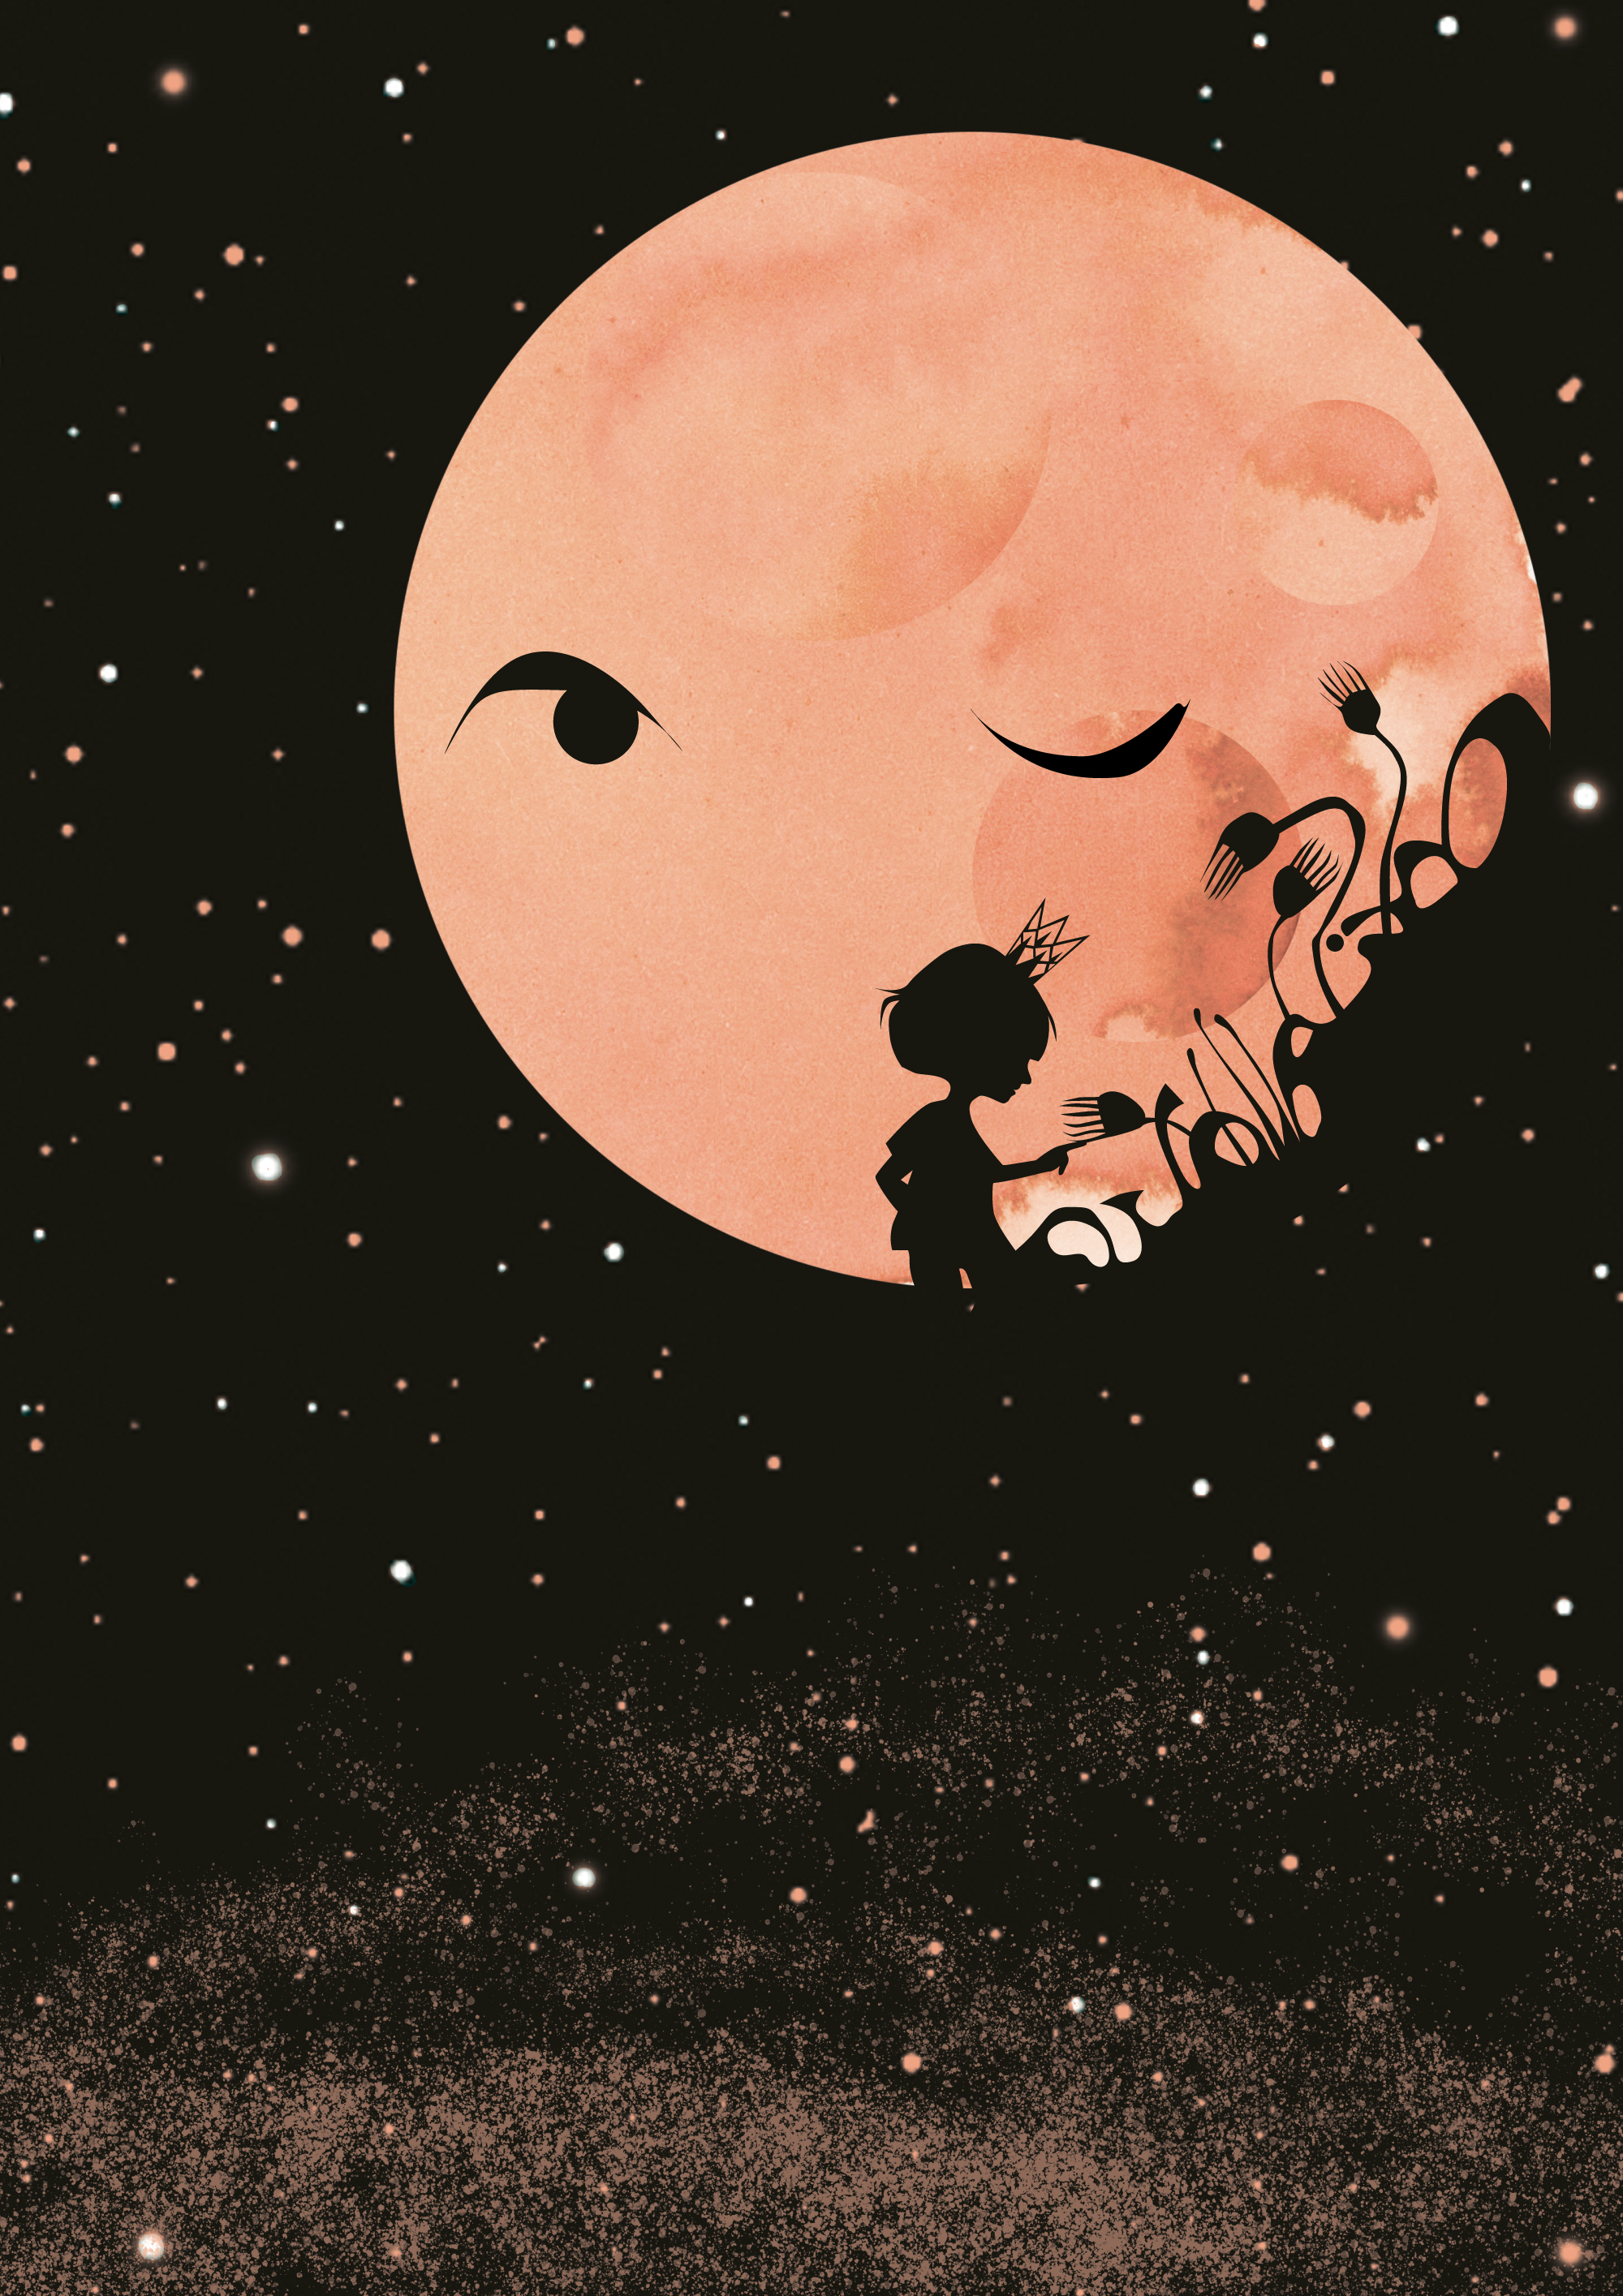 Flicka i svart silhuett mot bakgrund av en stor ljusröd måne och en svart stjärnbeströdd himmel.